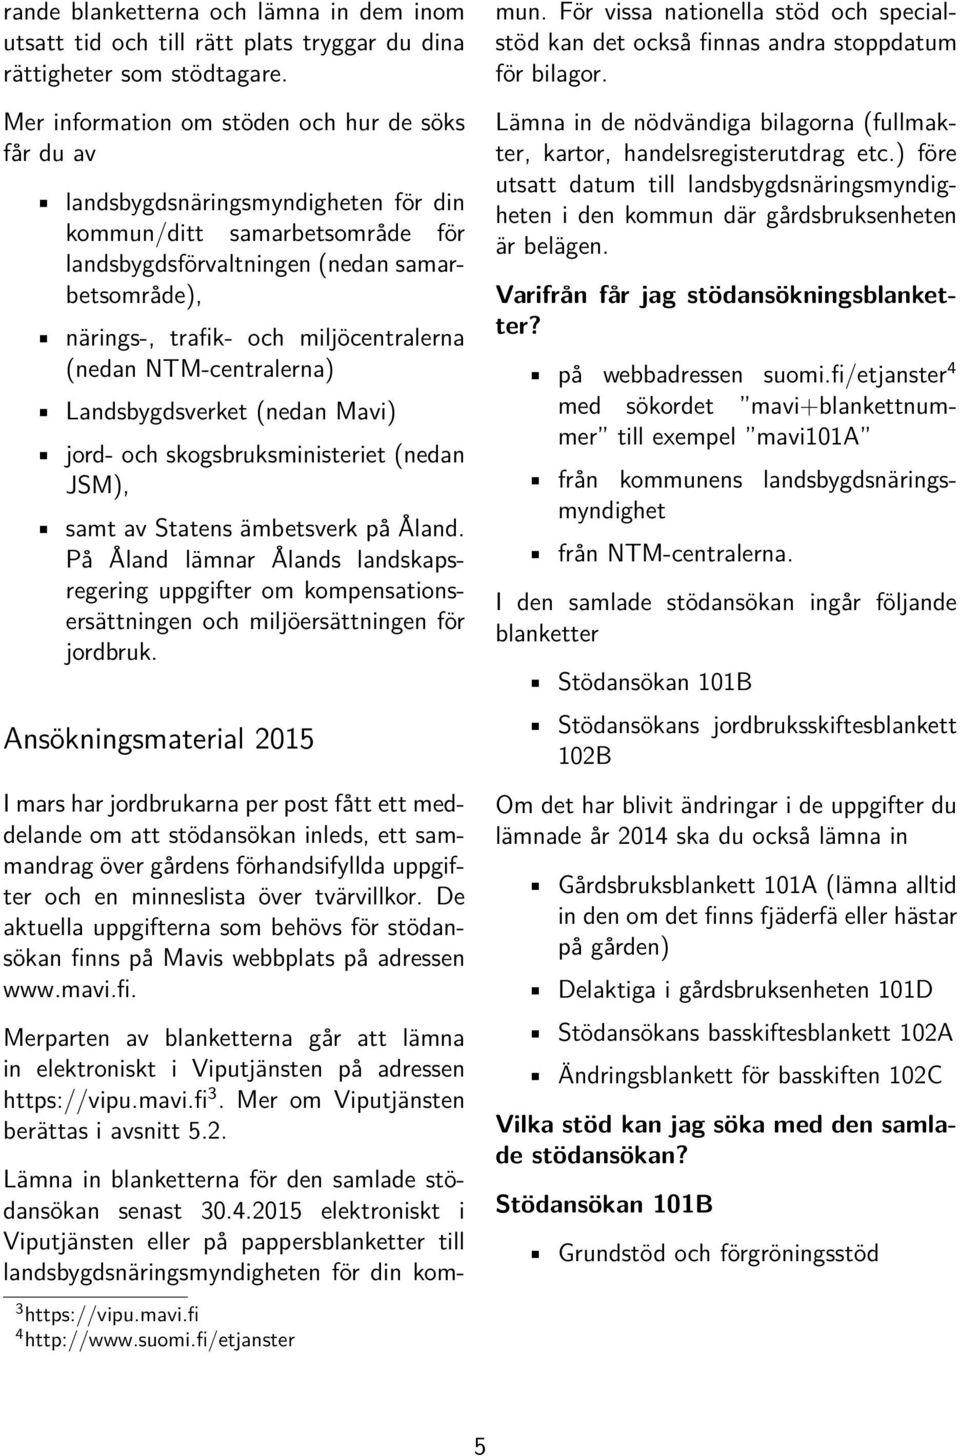 miljöcentralerna (nedan NTM-centralerna) Landsbygdsverket (nedan Mavi) jord- och skogsbruksministeriet (nedan JSM), samt av Statens ämbetsverk på Åland.